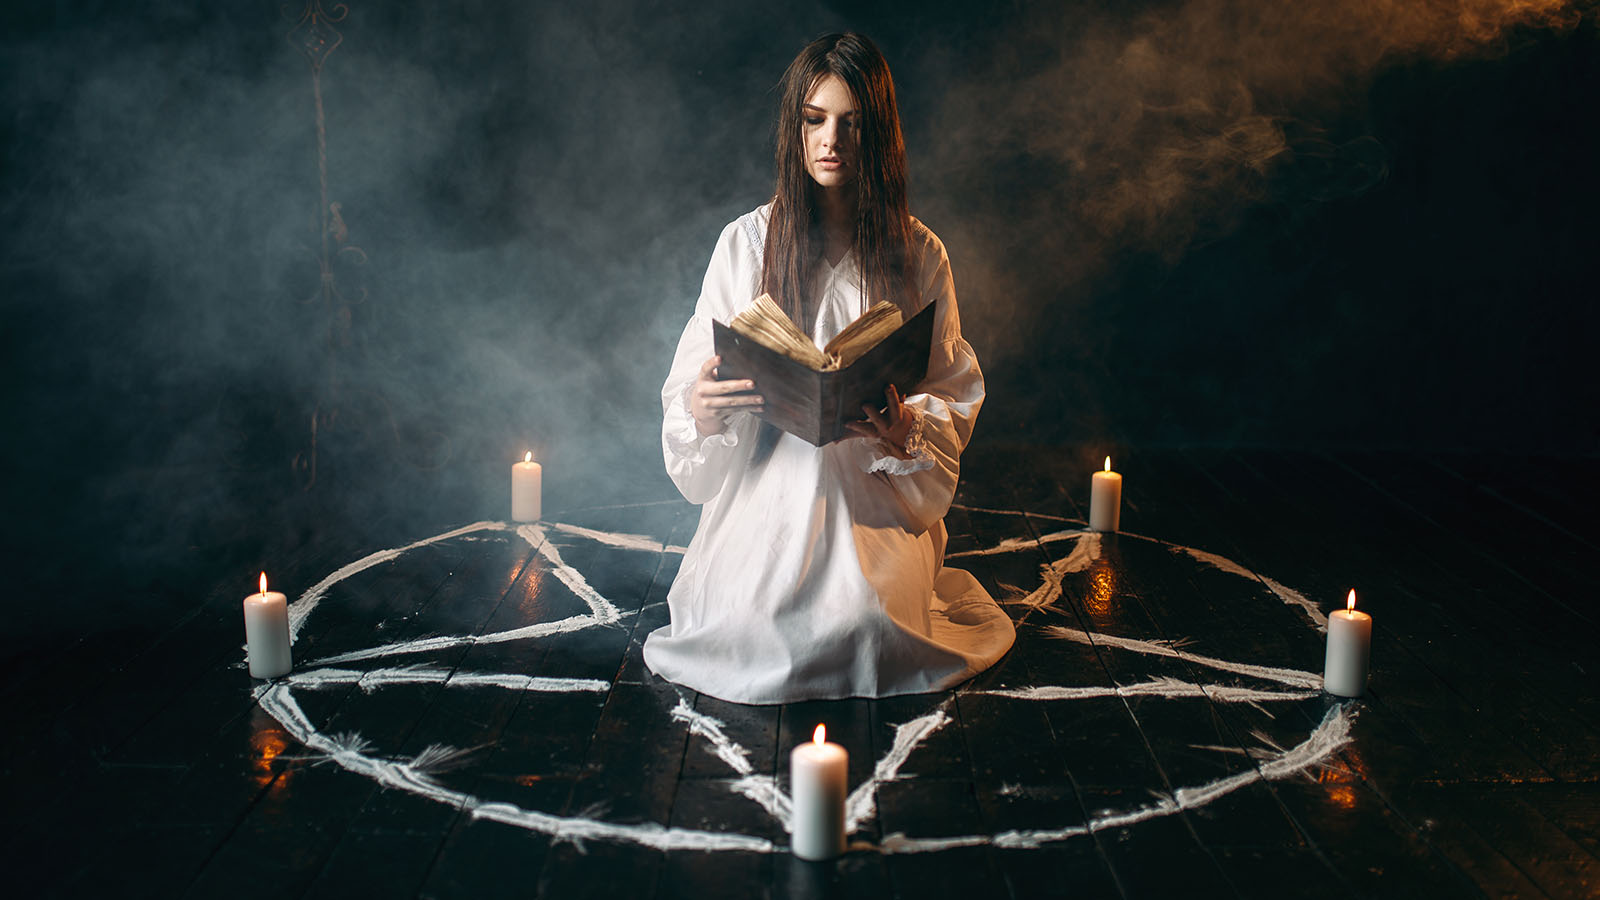 magic ritual image